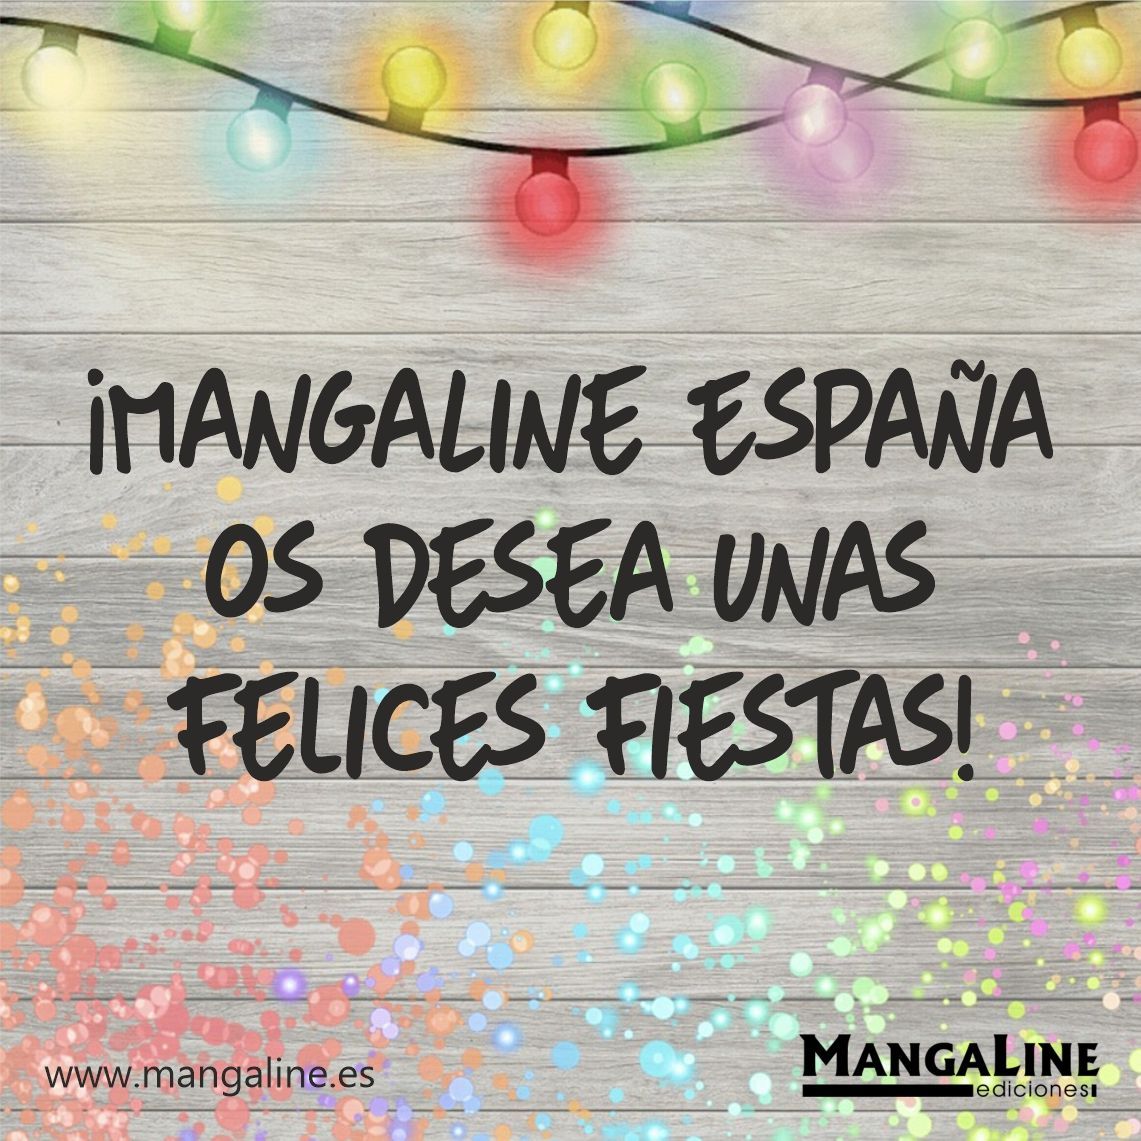 Desde MangaLine España os queremos desear a todos unas felices fiestas. ¡Muchas gracias a todos por el apoyo recibido!